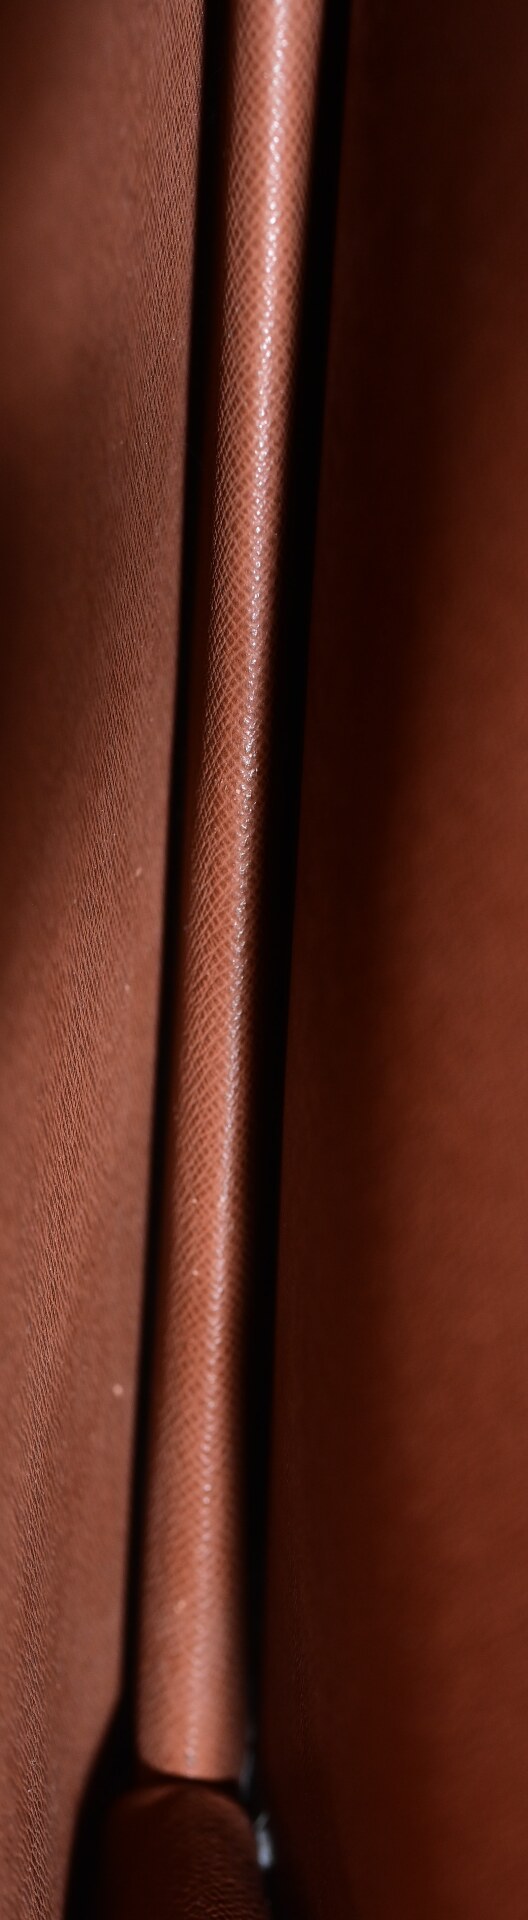 Umhänge - Handtasche "Louis Vuitton", stärkere Alters- und Gebrauchsspuren, ca. 24 x 30 cm, Innenfa - Image 6 of 10